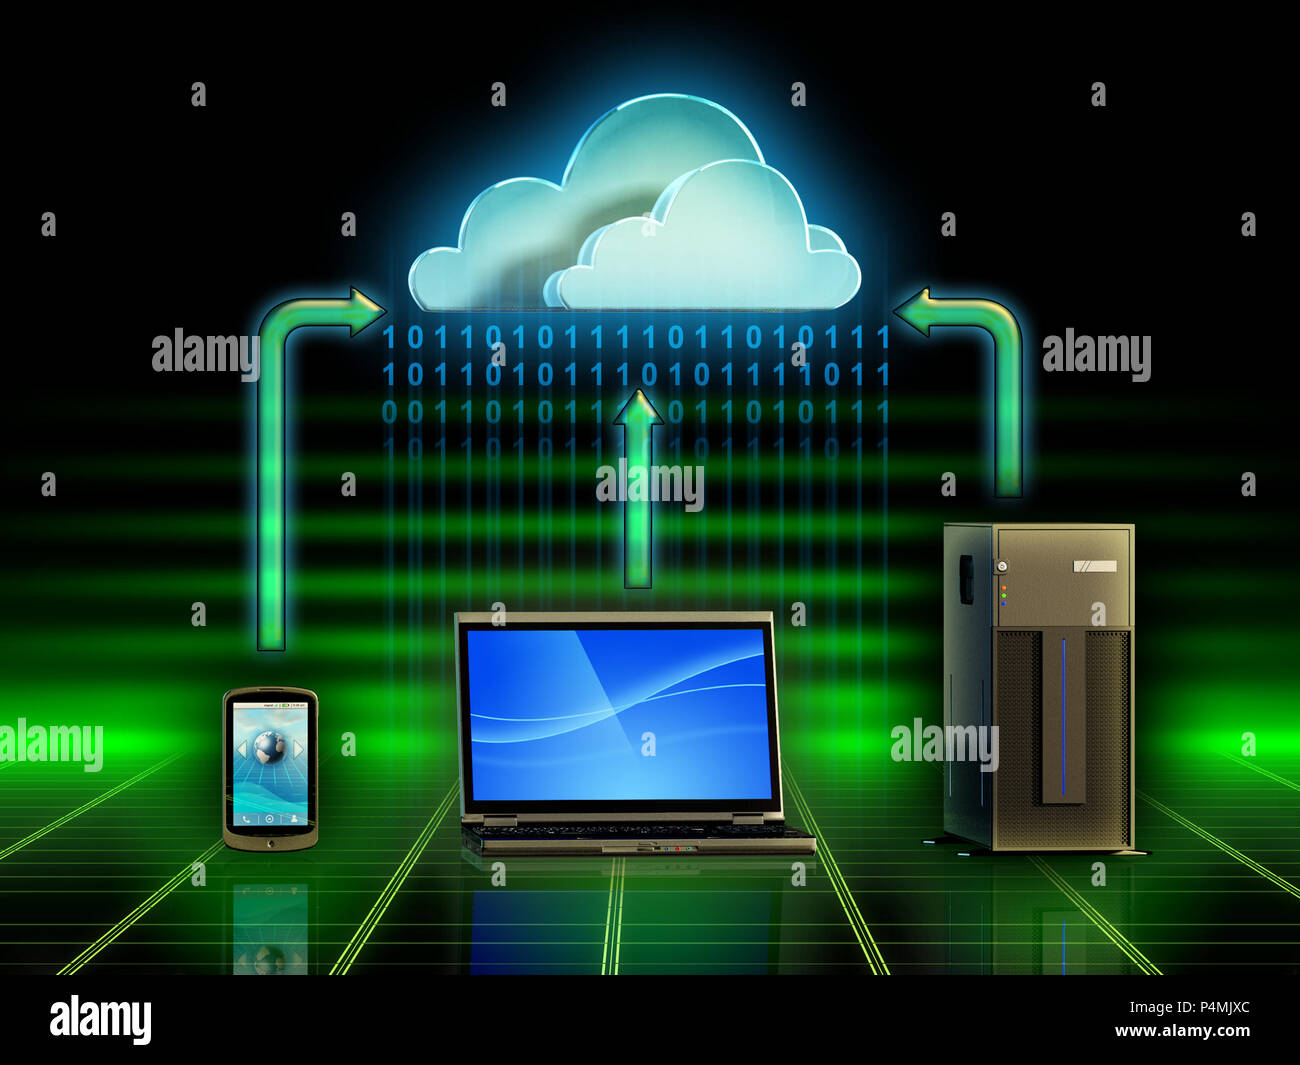 Verschiedene elektronische Geräte speichern und Abrufen von Inhalten aus einer Cloud Storage System. Digitale Illustration. Stockfoto